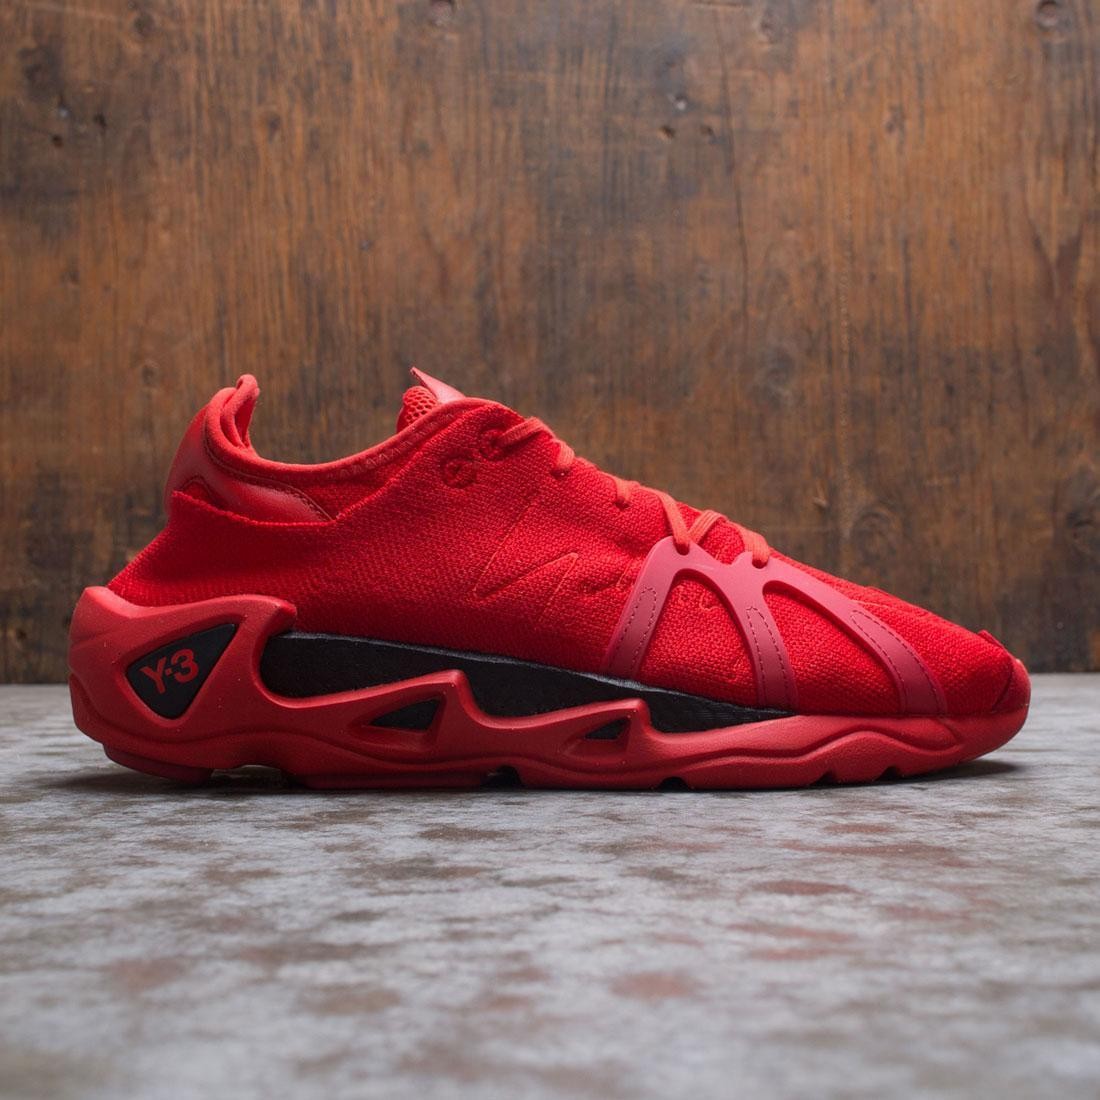 y3 red sneakers